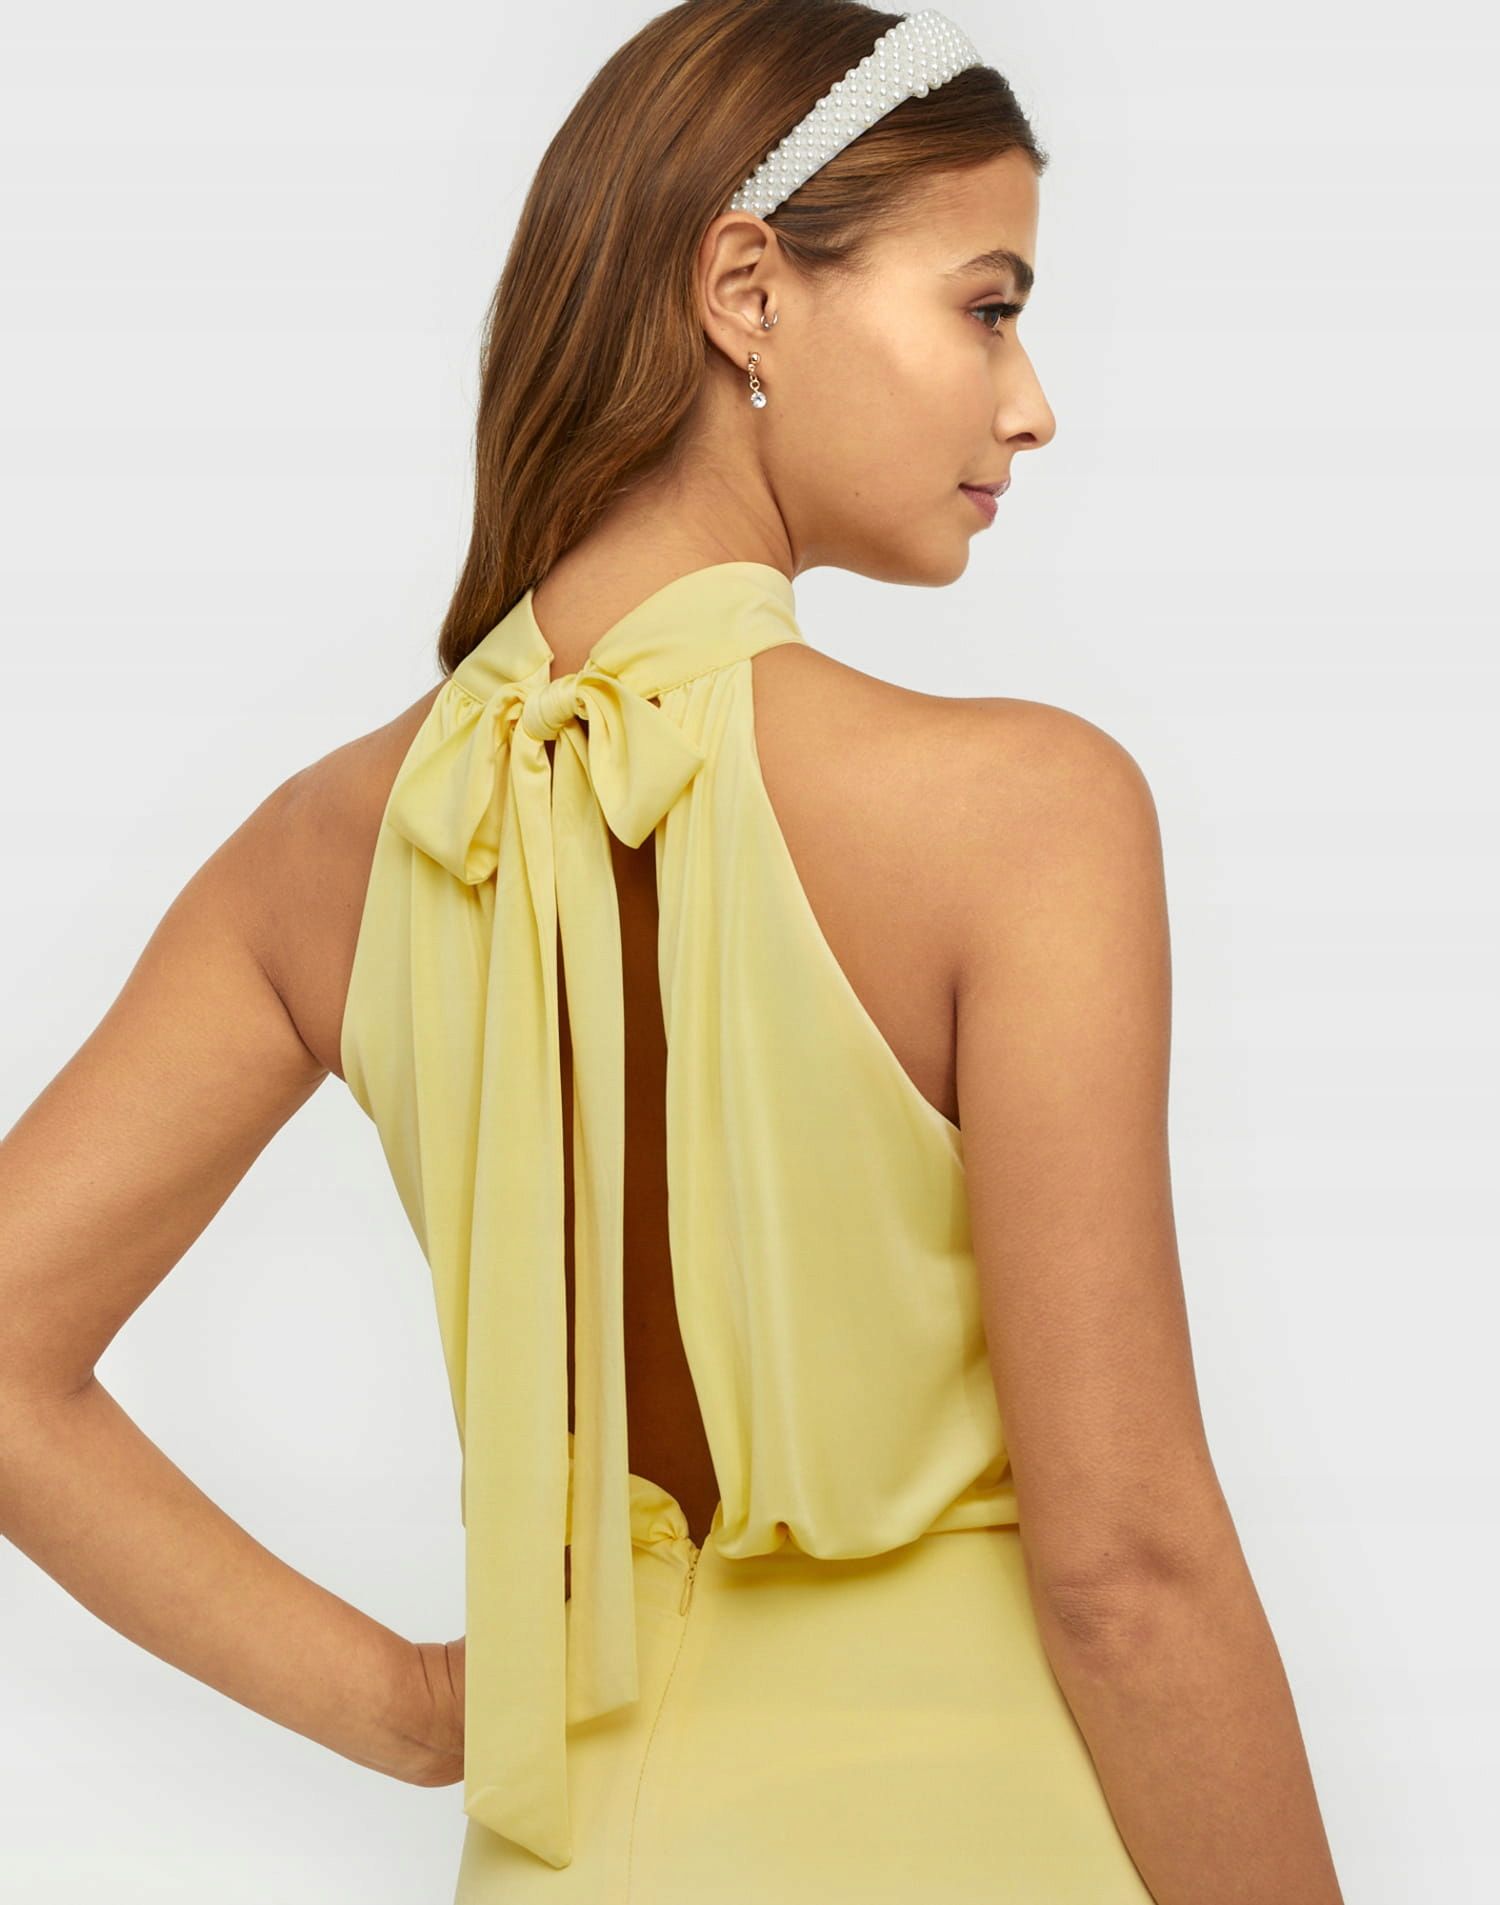 NELLY Suknia balowa wiązana na szyi żółta S 36